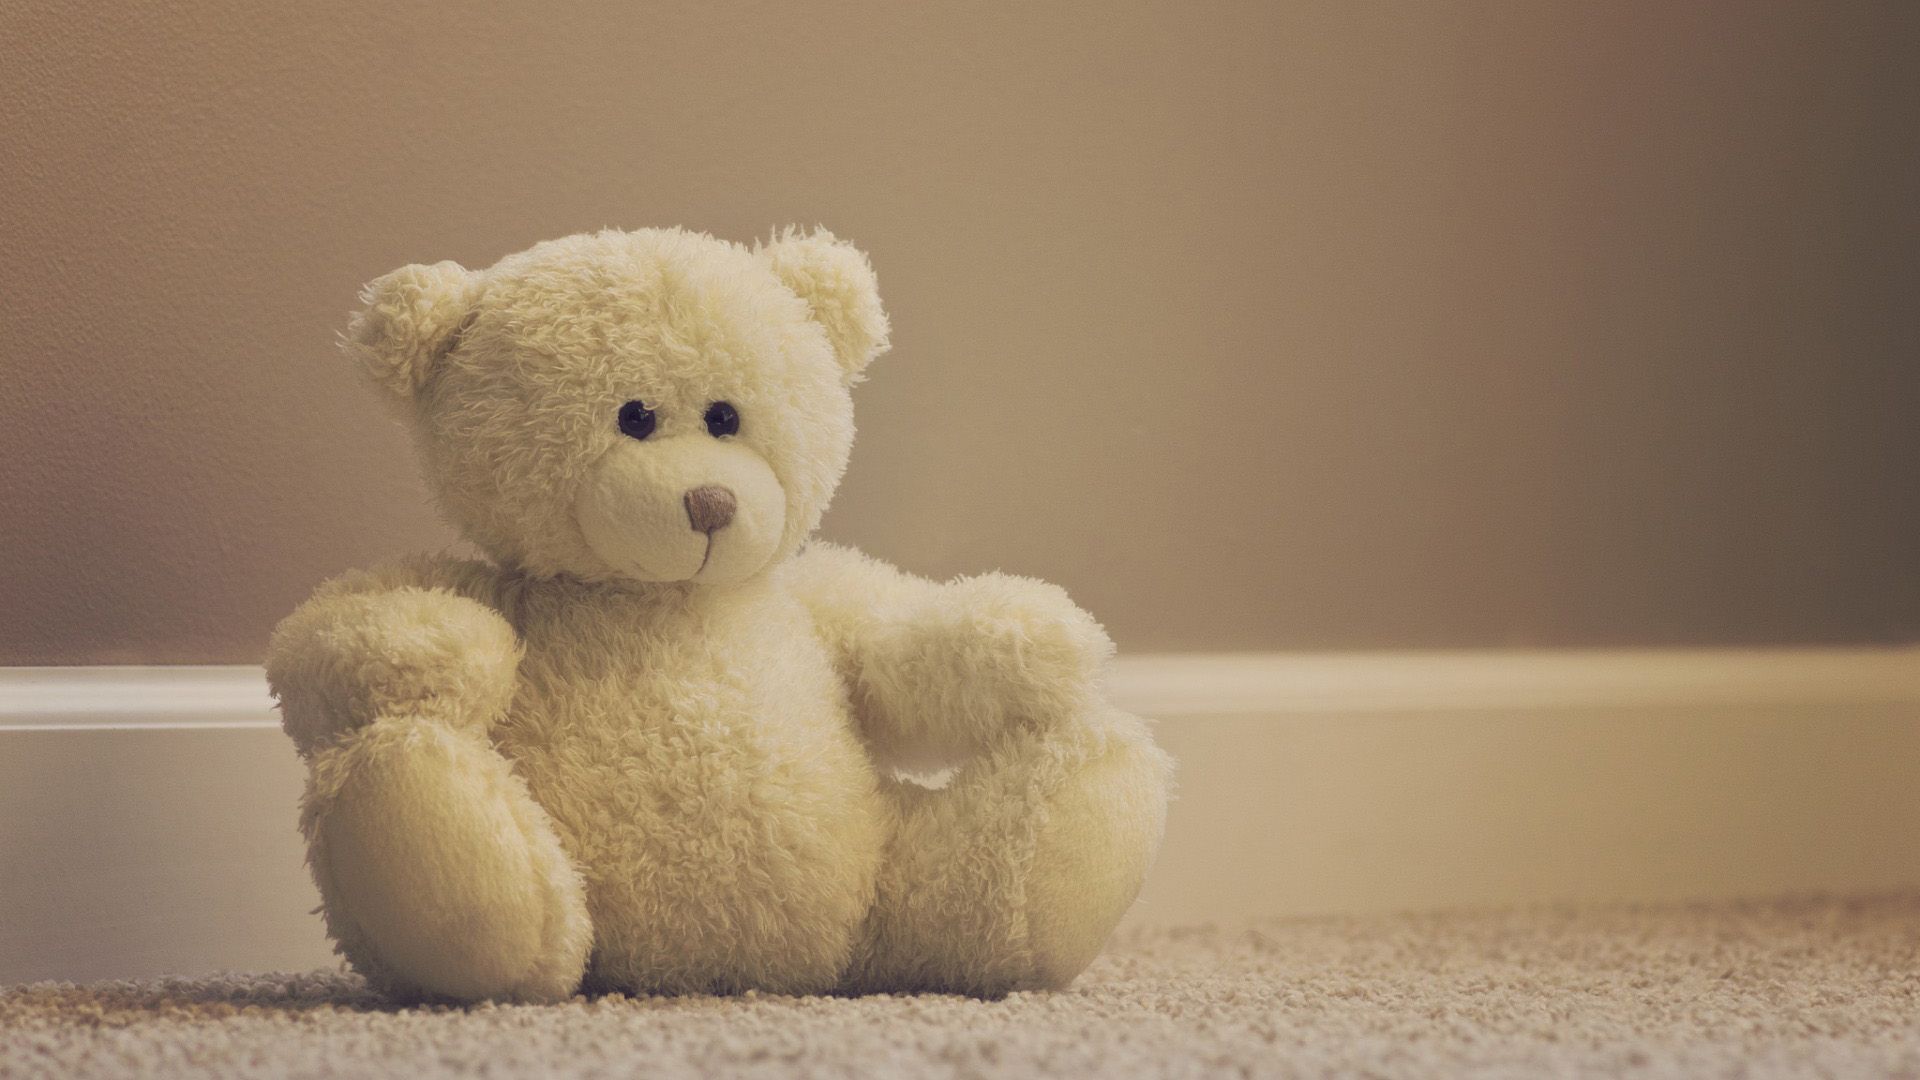 A teddy bear sitting on the floor - Teddy bear